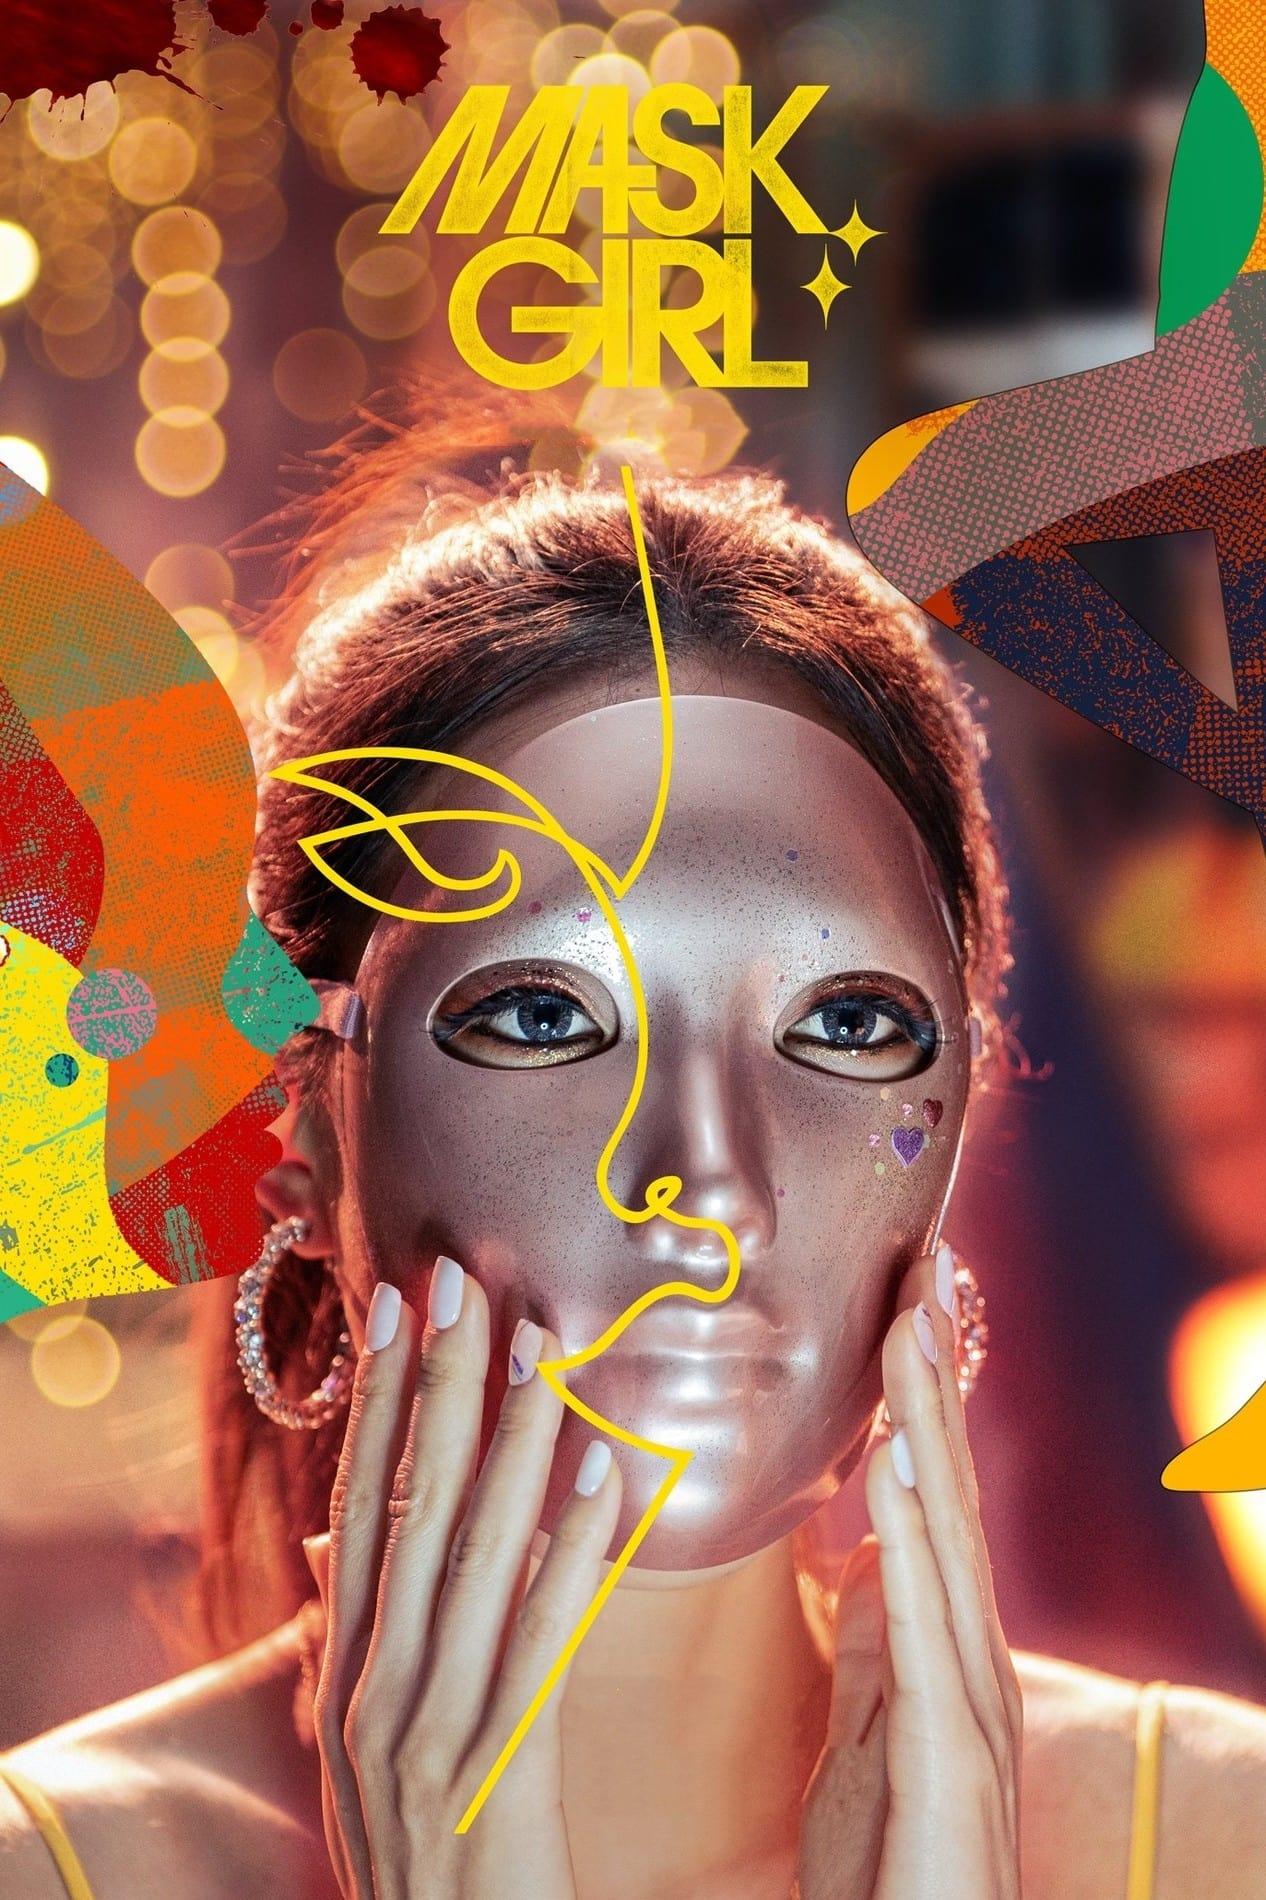 Mask Girl poster